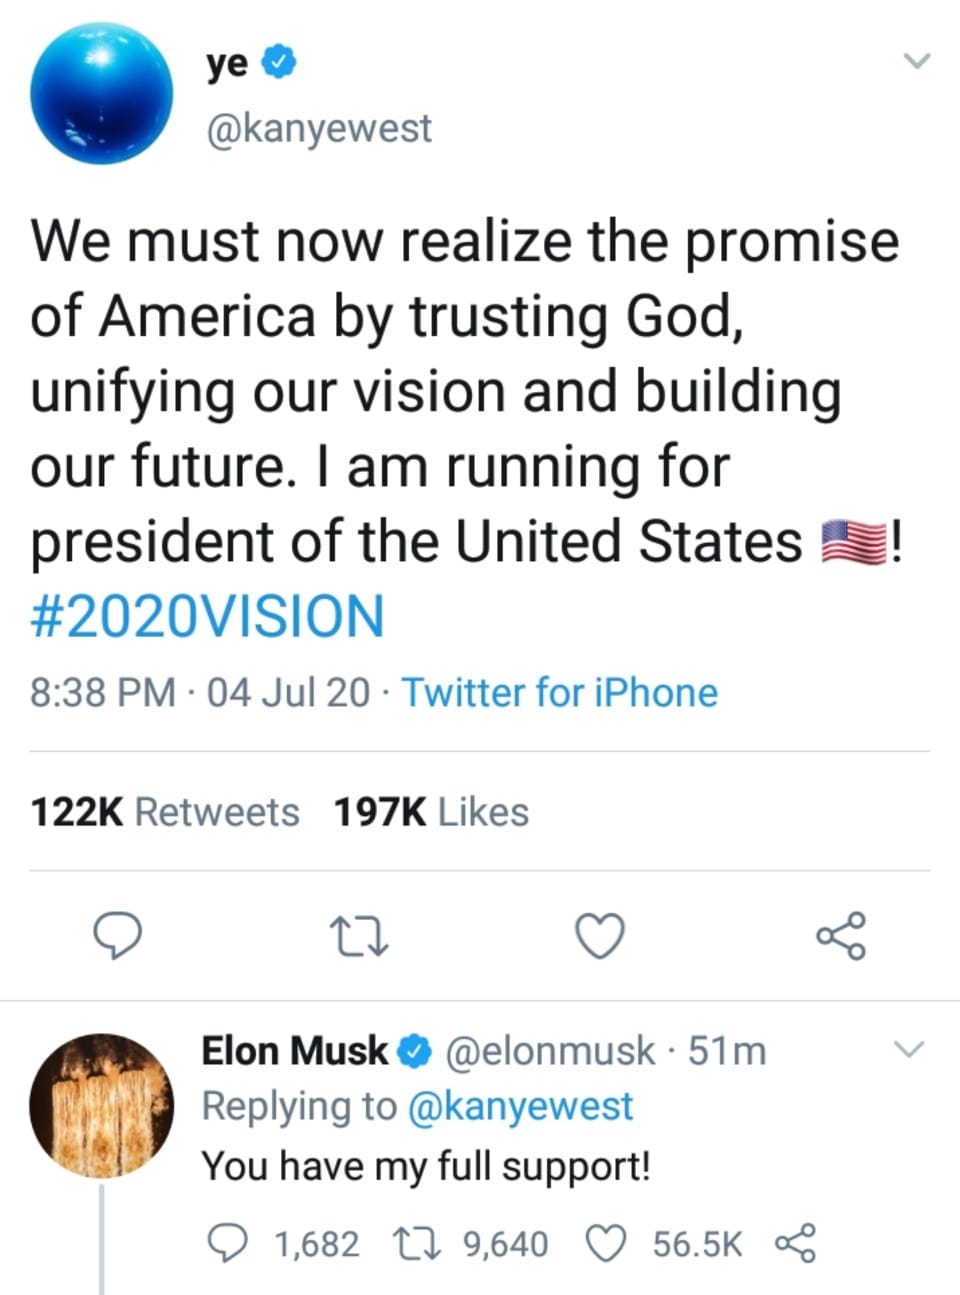 Kanye West’s tweet and Elon Musk’s response tweet